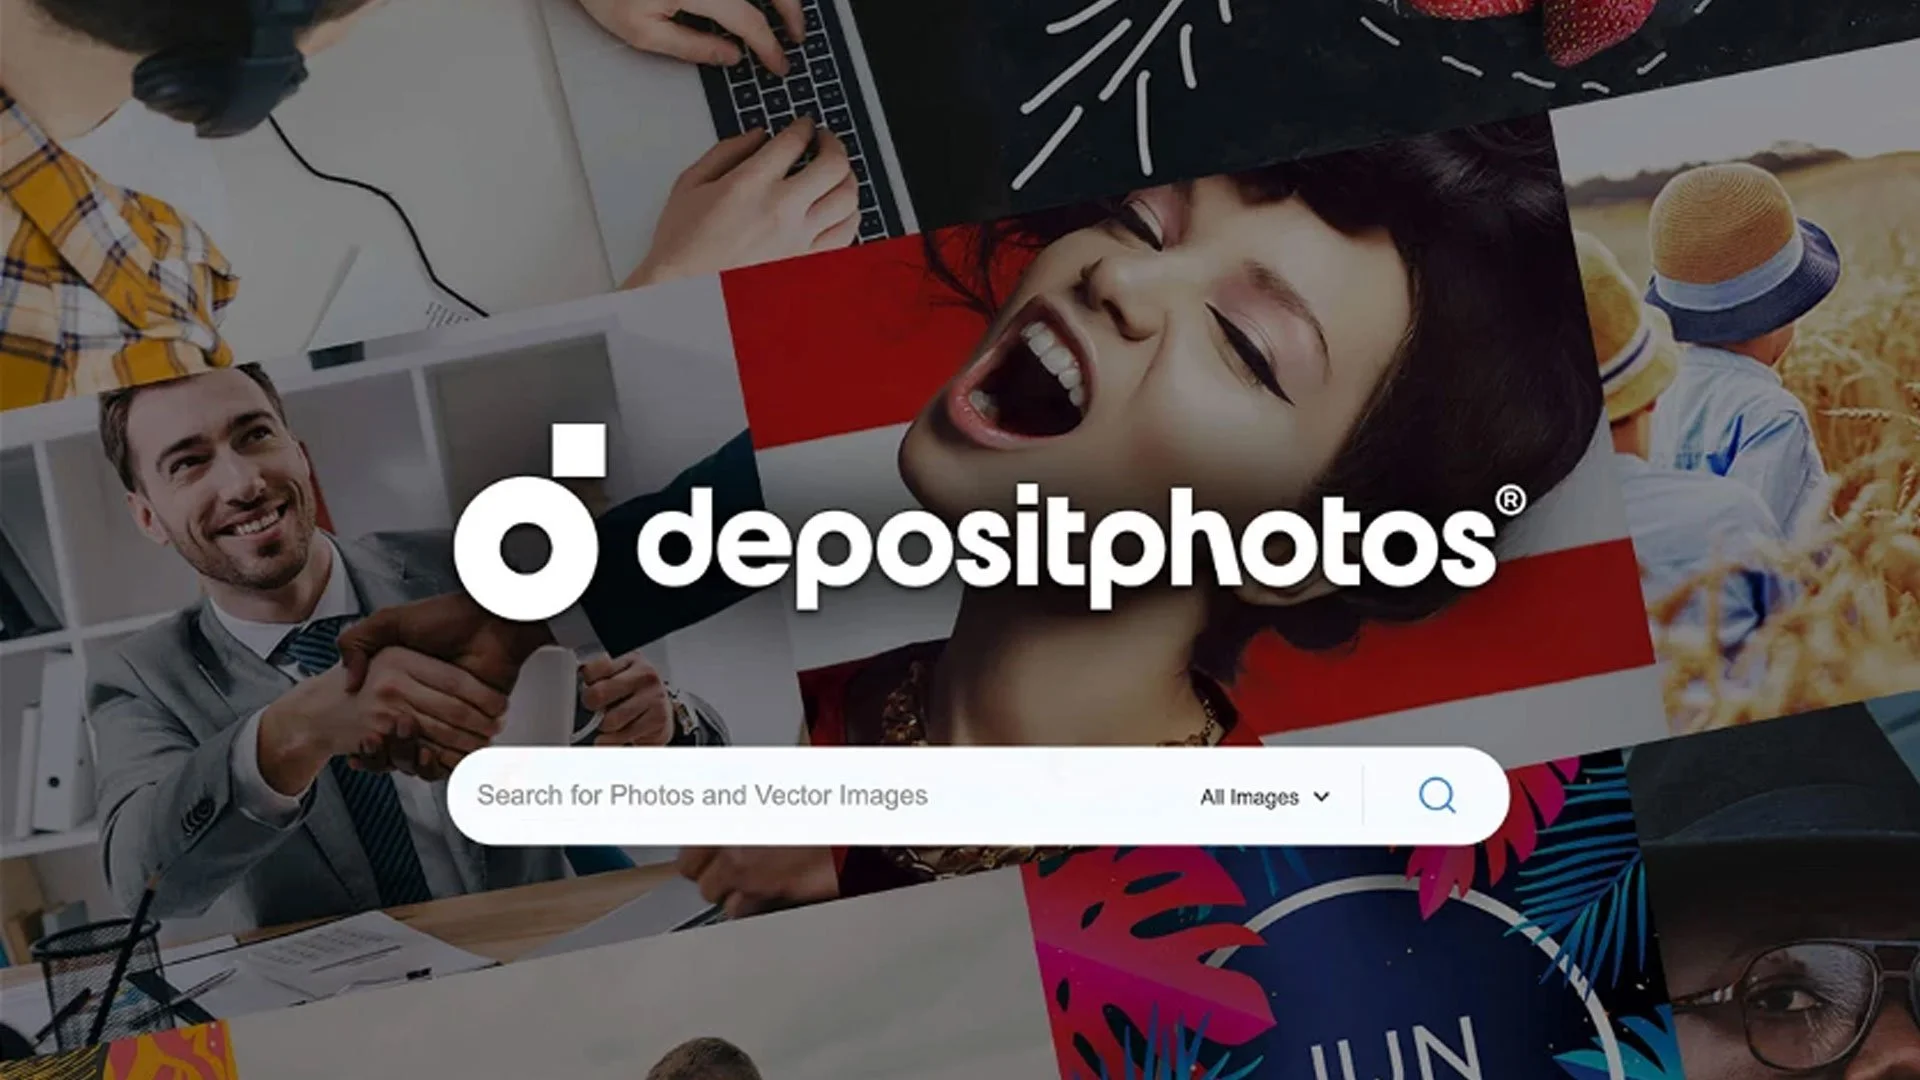 Depositphotos Lifetime Deal $39 | Best Shutterstock Alternative